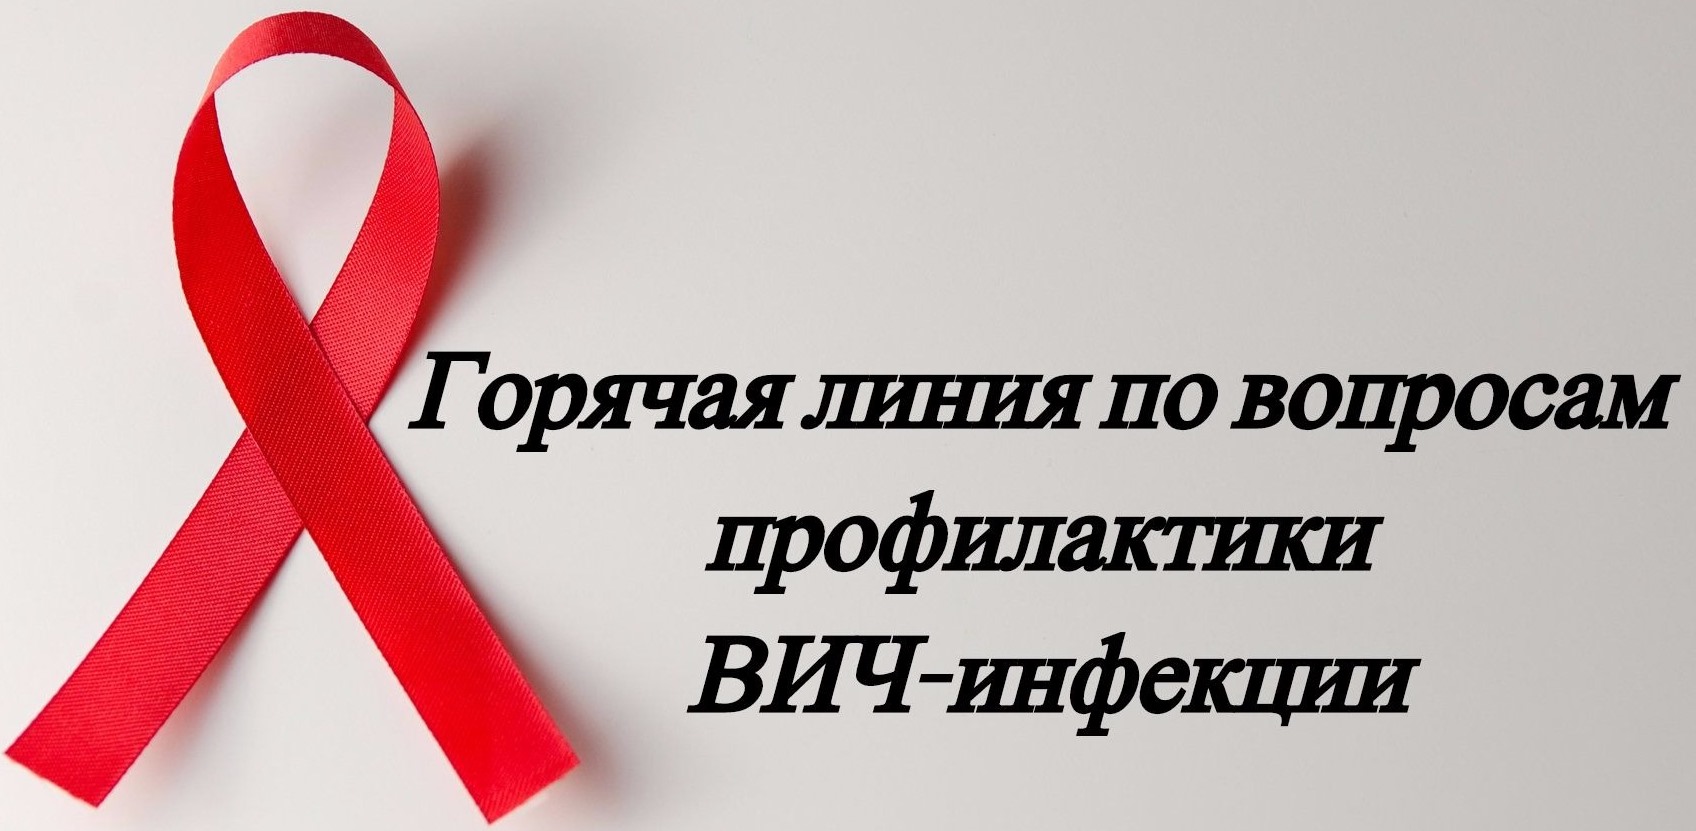 Территориальный отдел Управления Роспотребнадзора  по Белгородской области в Валуйском районе проводит консультирования граждан по вопросам профилактики ВИЧ-инфекции.